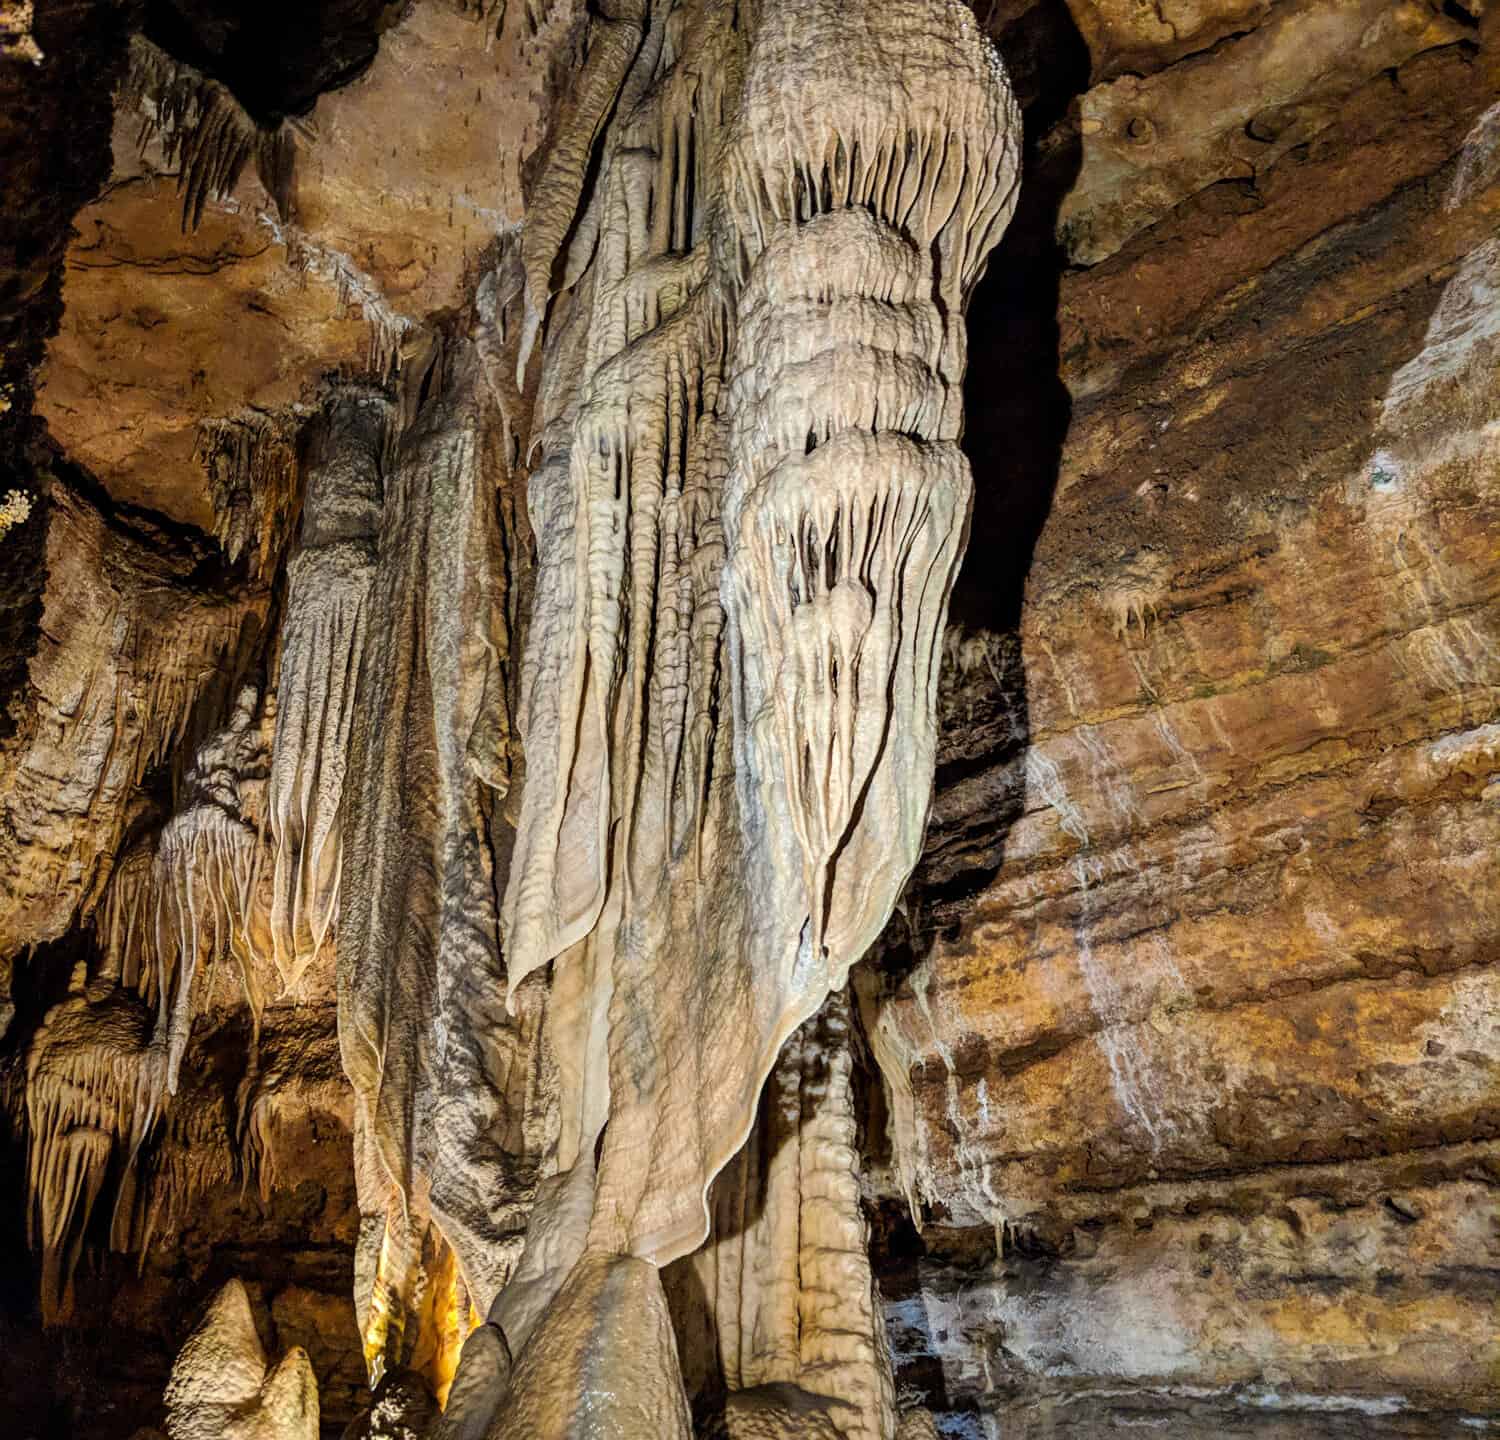 Talking Rocks Cavern, Missouri